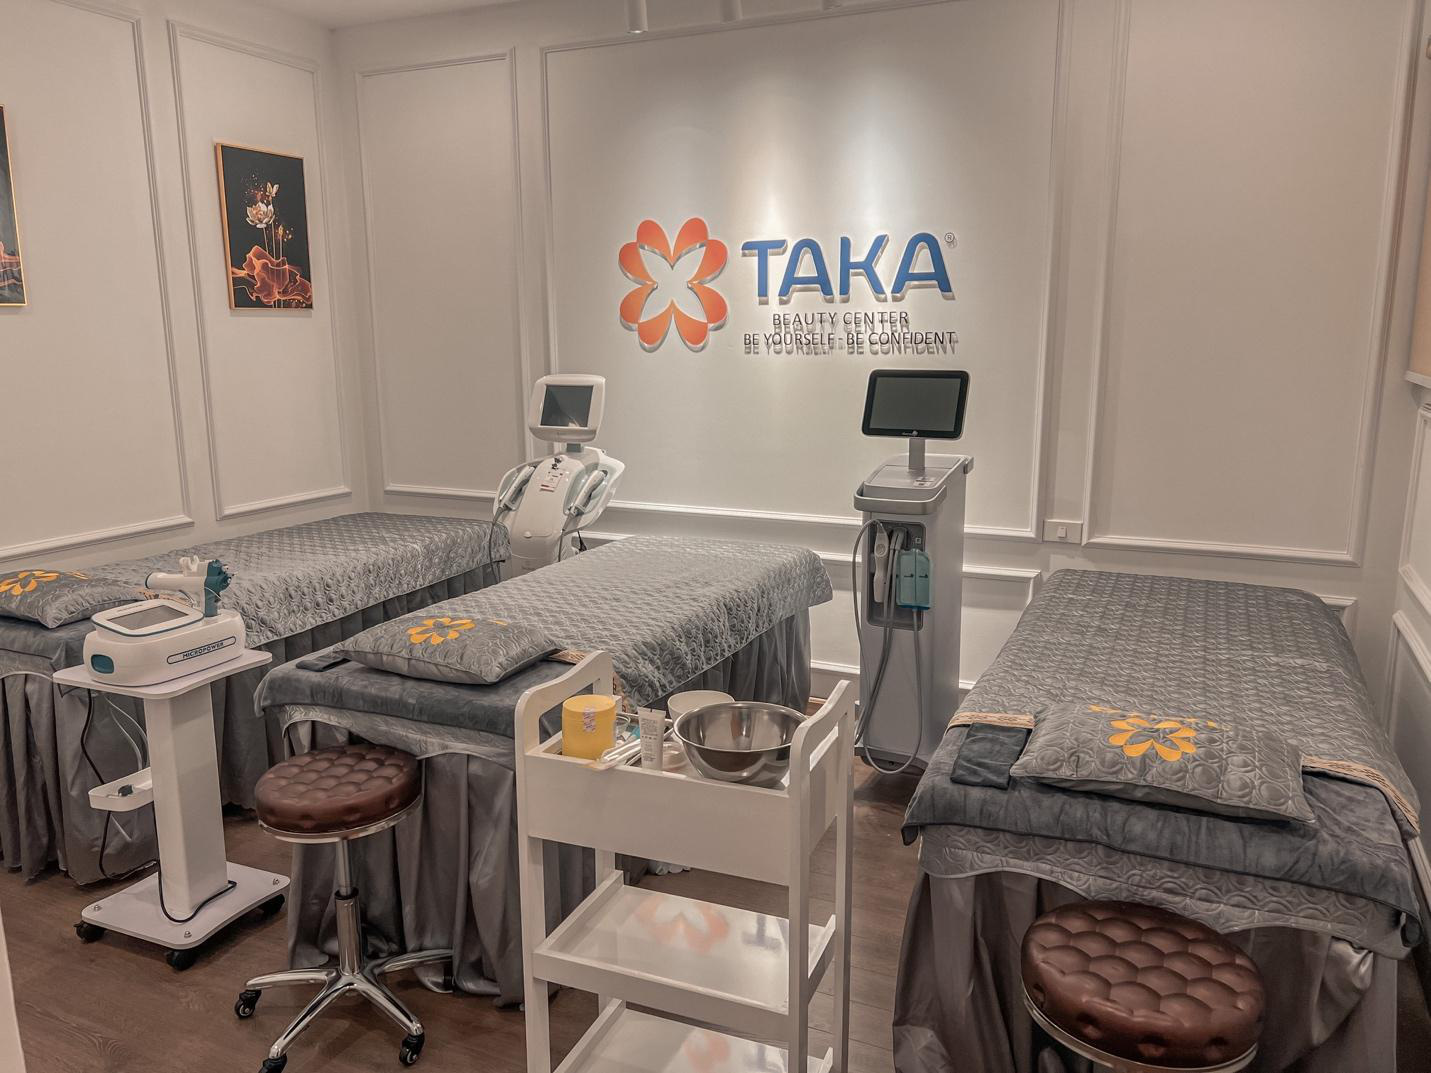 Những yếu tố giúp TaKa Beauty Center phát triển, trở thành địa chỉ làm đẹp uy tín tại Hà Nội - Ảnh 2.